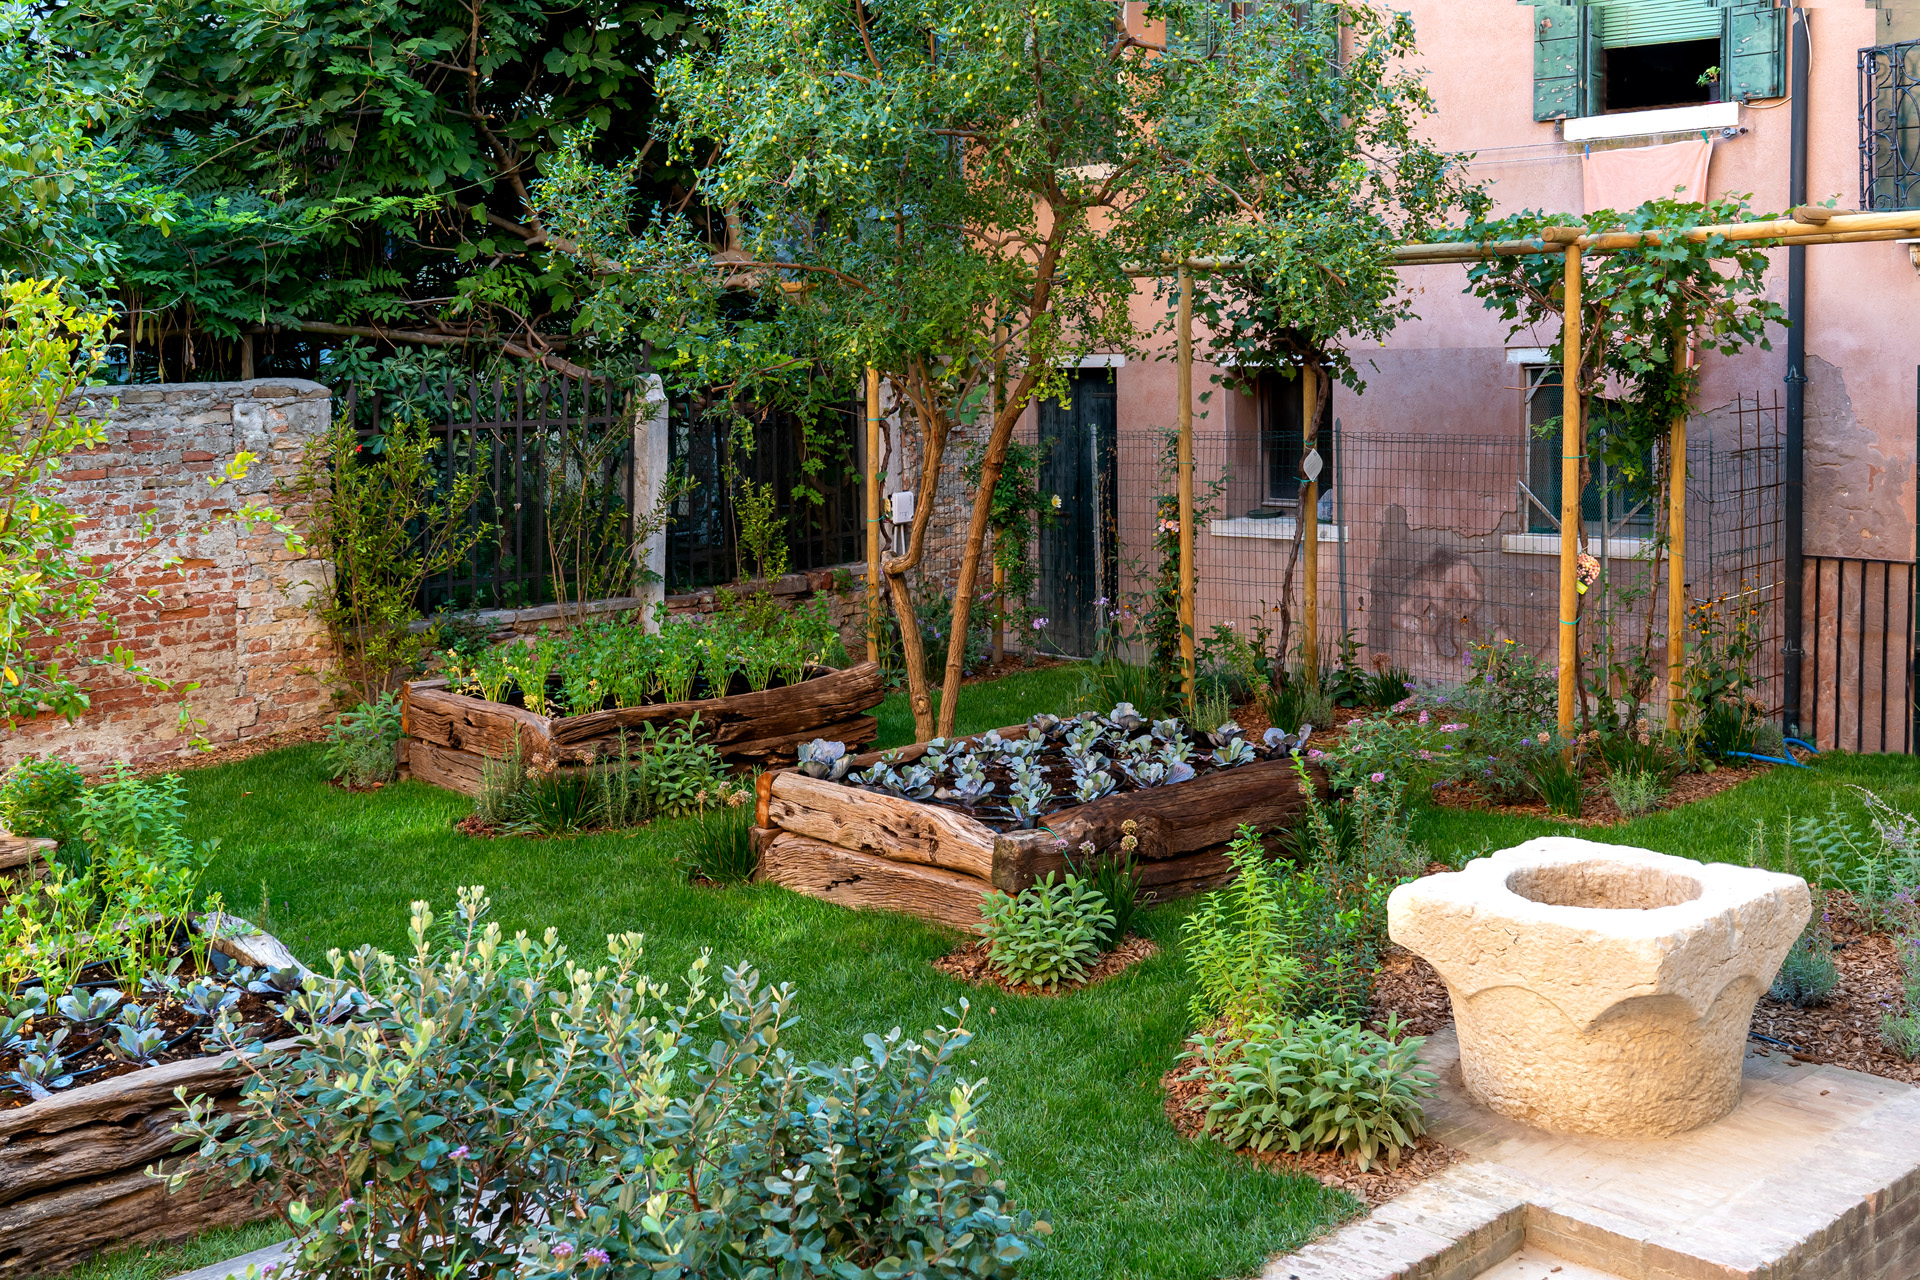 The kitchen garden at Ca di Dio